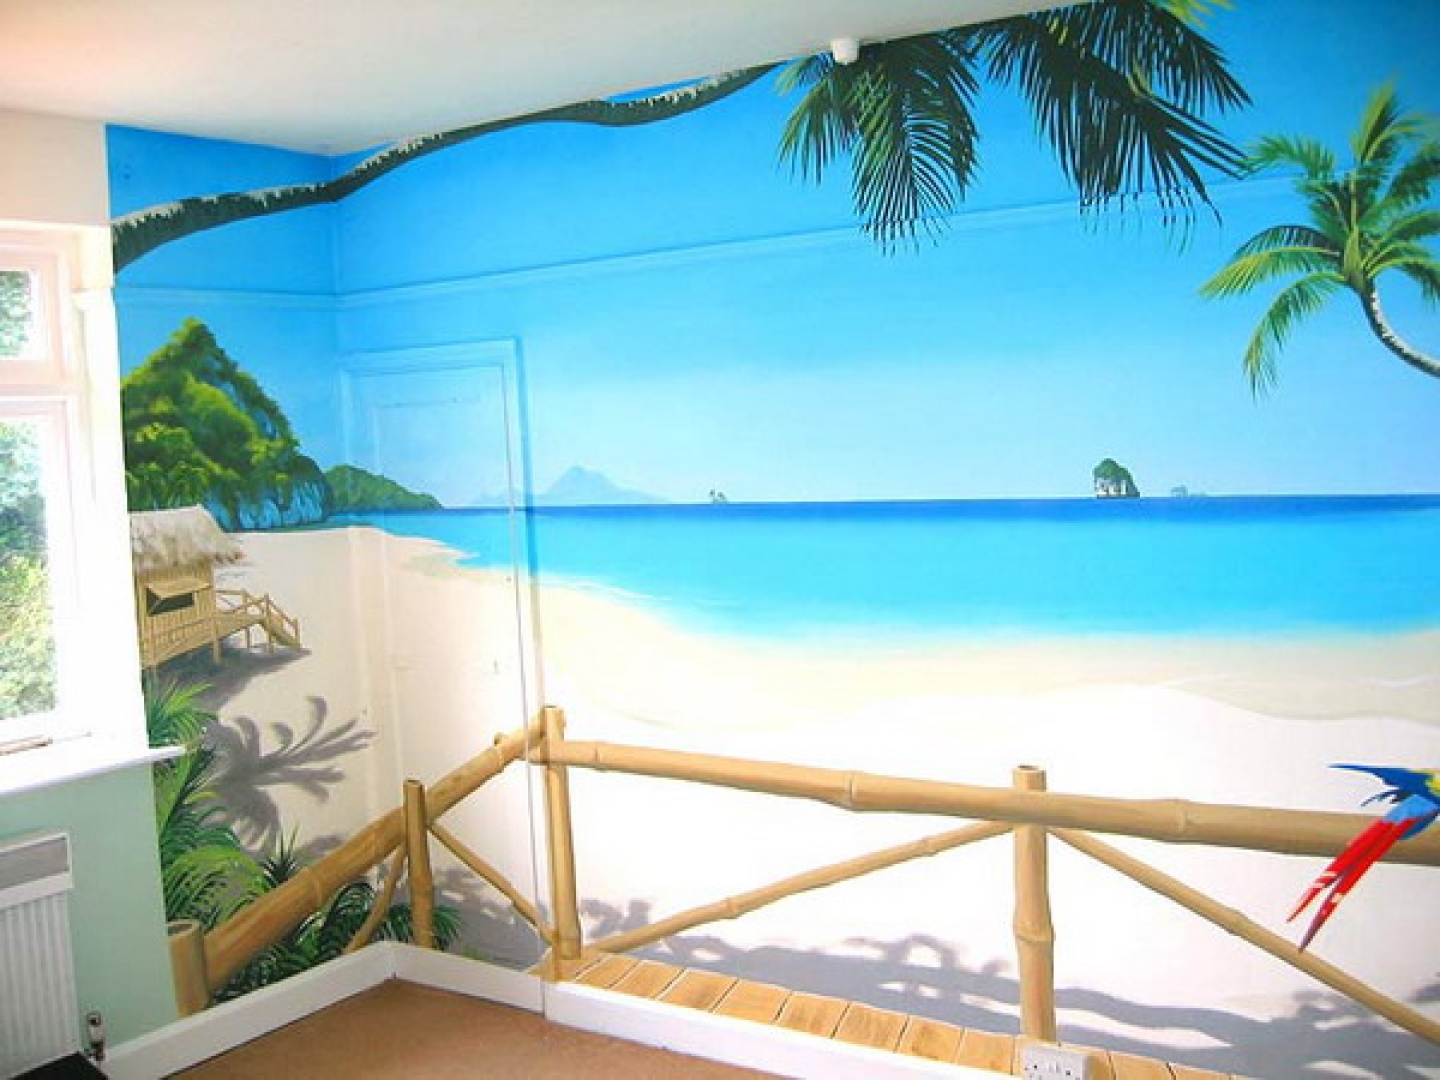 Tags Beach Design Wall Mural Murals Houses